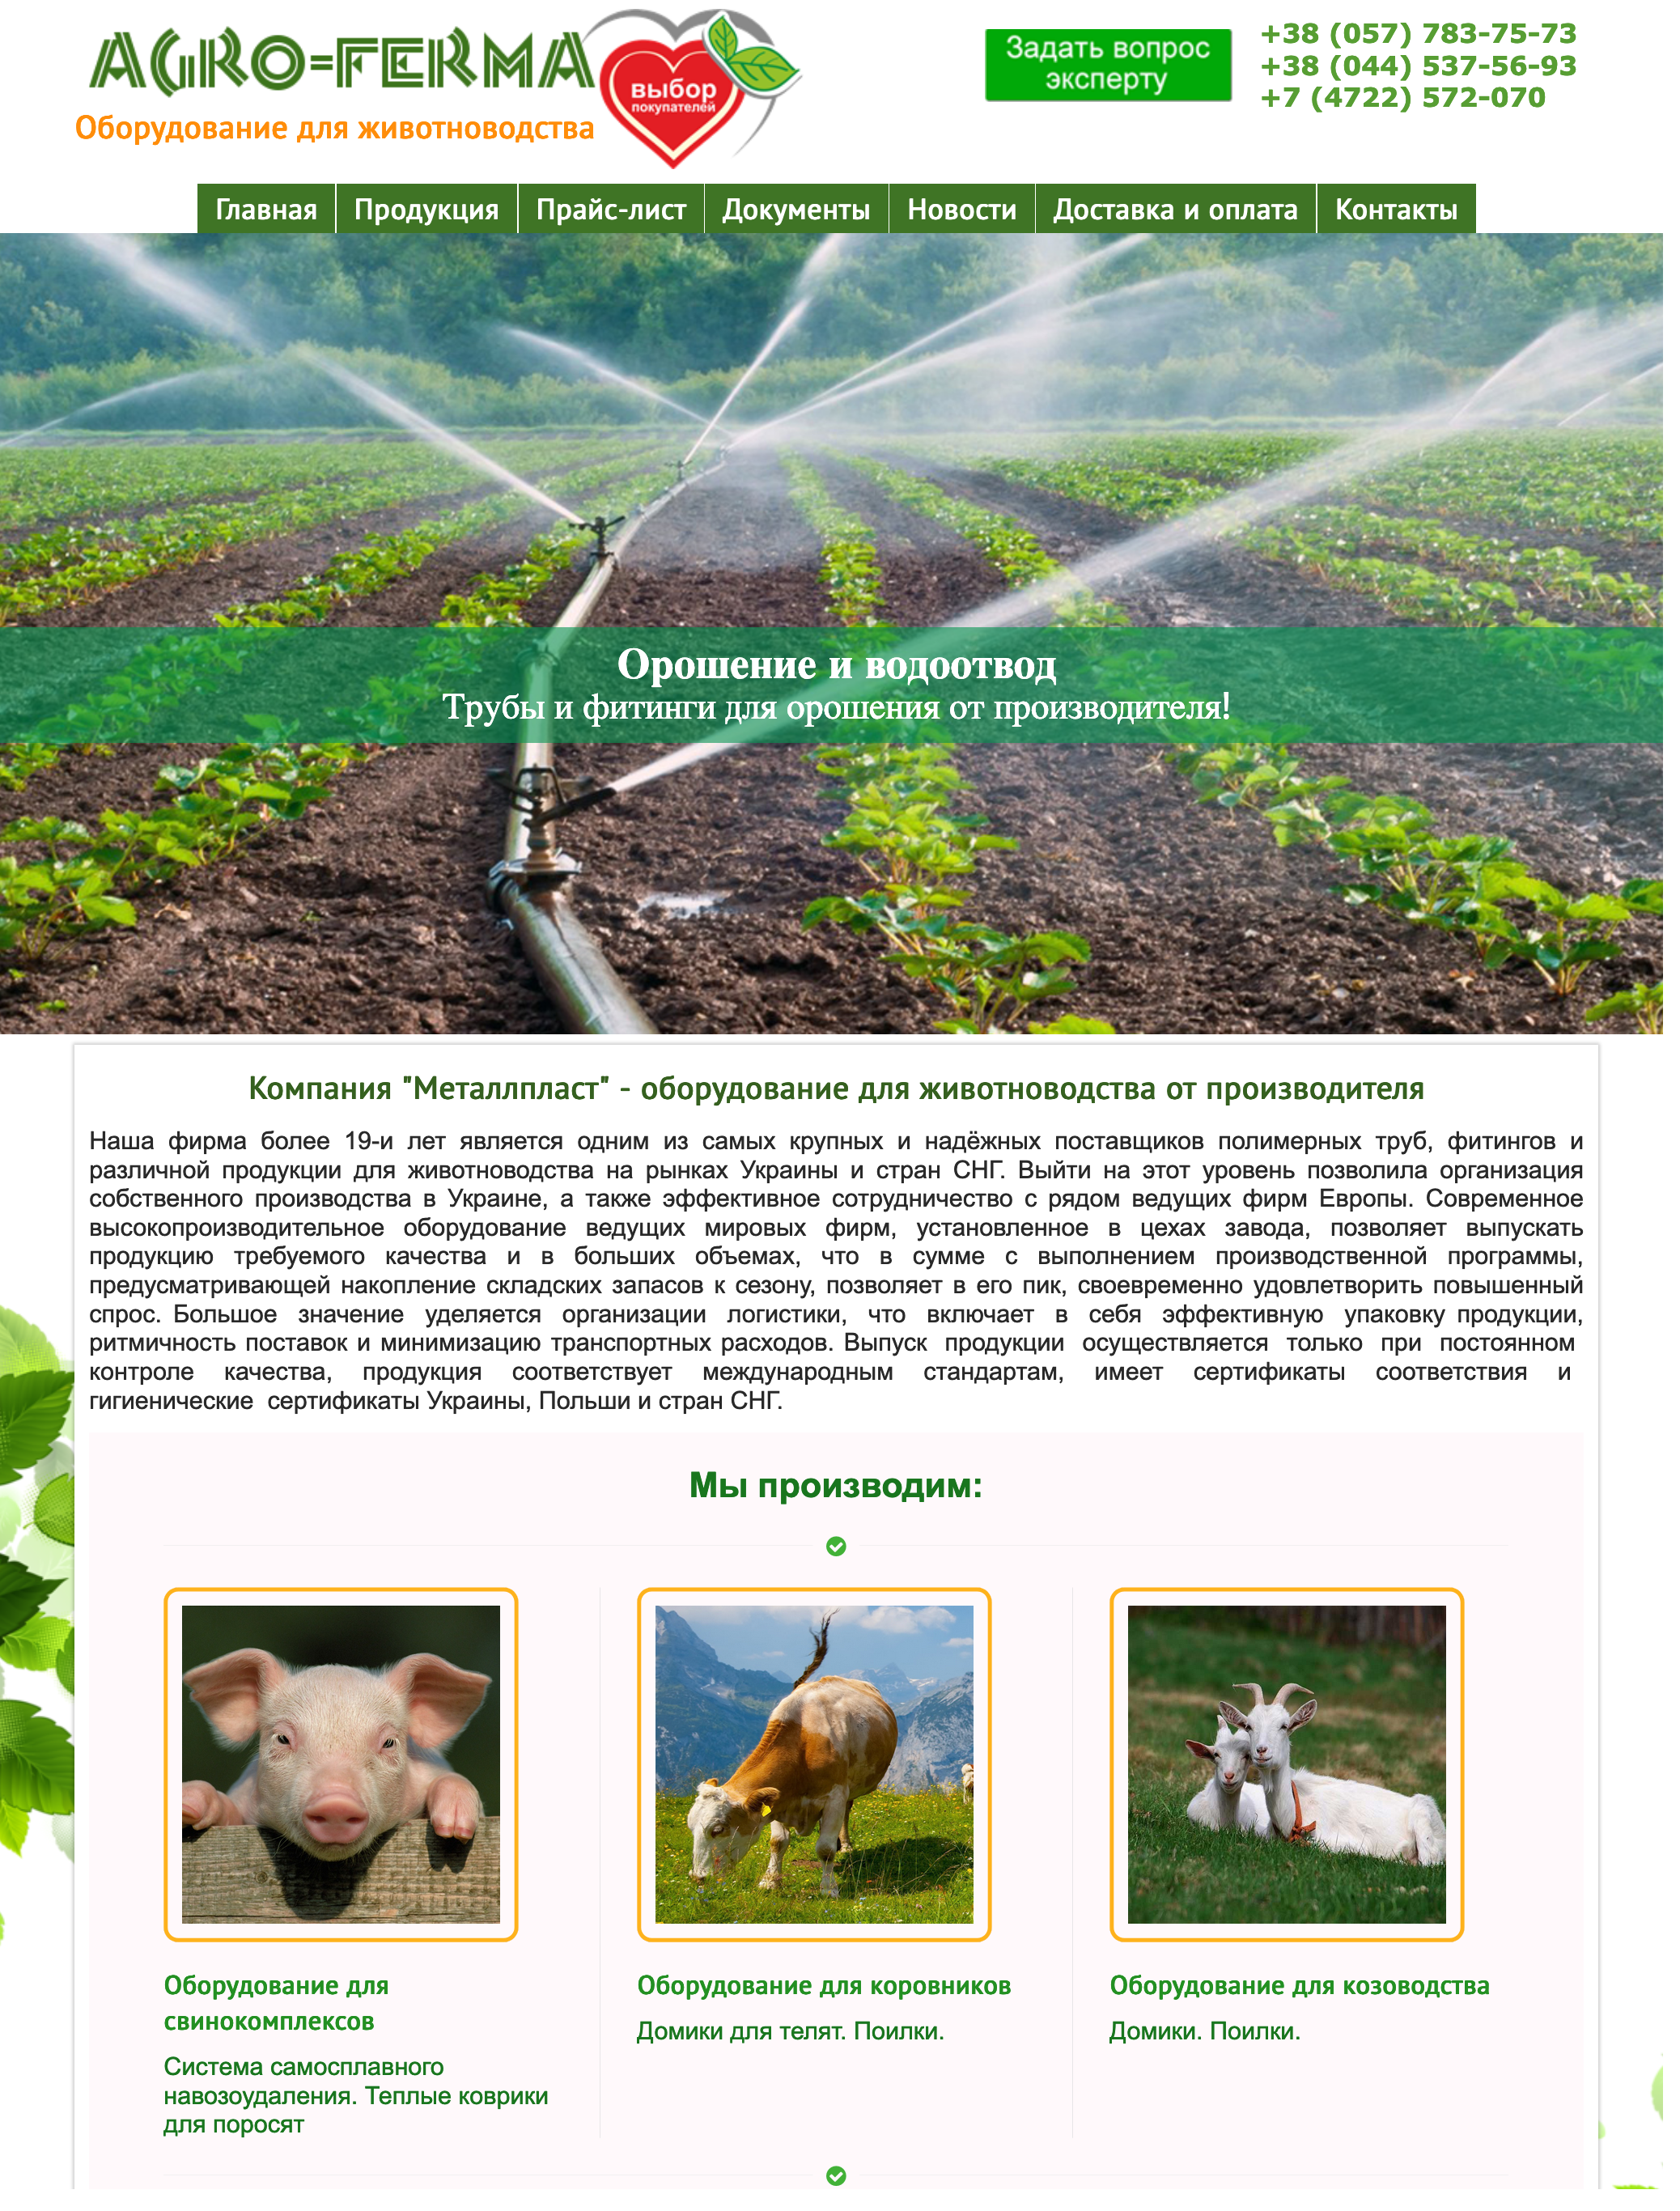 Создание сайта для Агро-Фермы